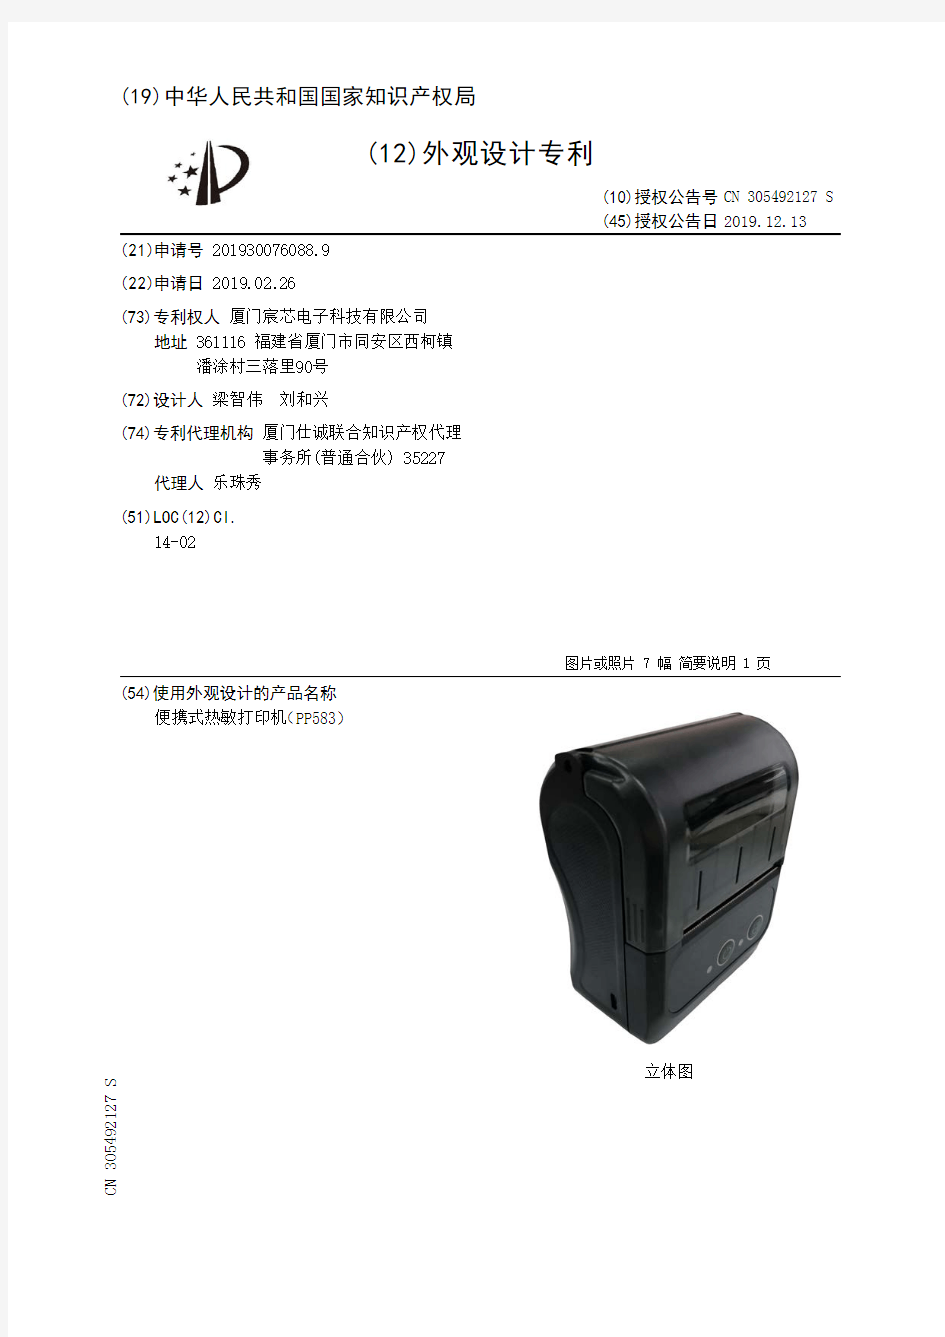 【CN305492127S】便携式热敏打印机PP583【专利】